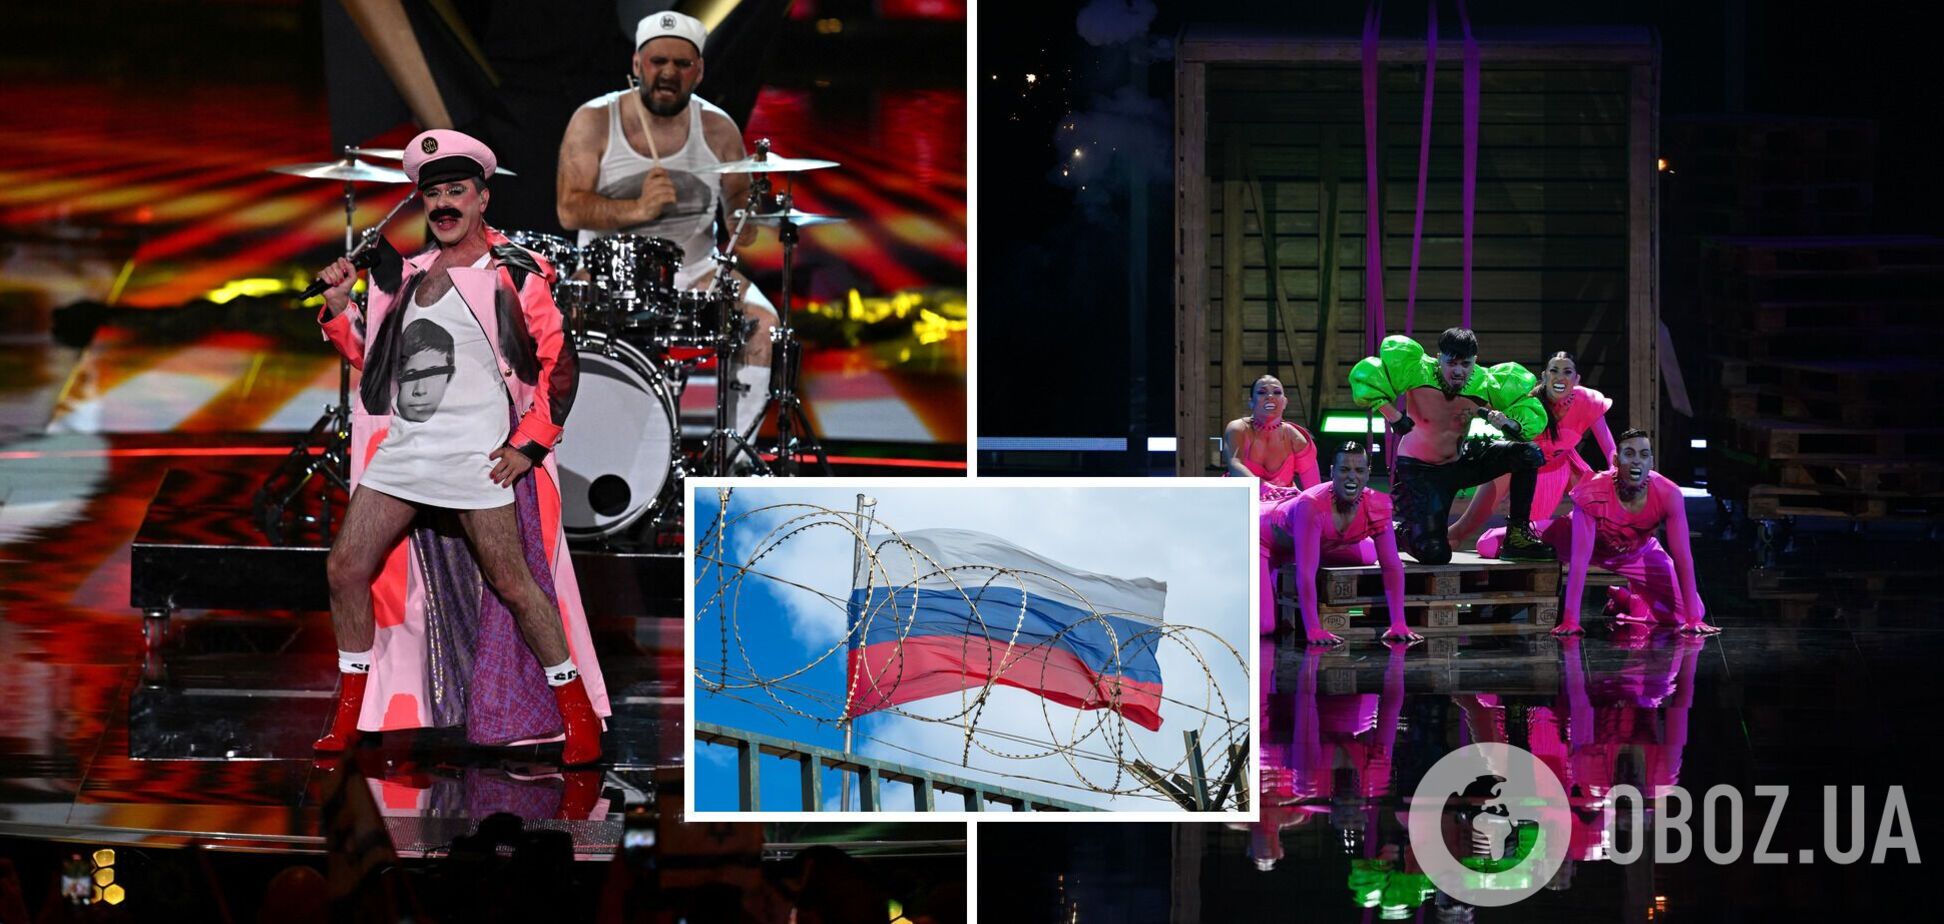 'Мужики в трусах и разврат': у россиян истерика из-за первого полуфинала Евровидения-2023, но они делают вид, что им все равно